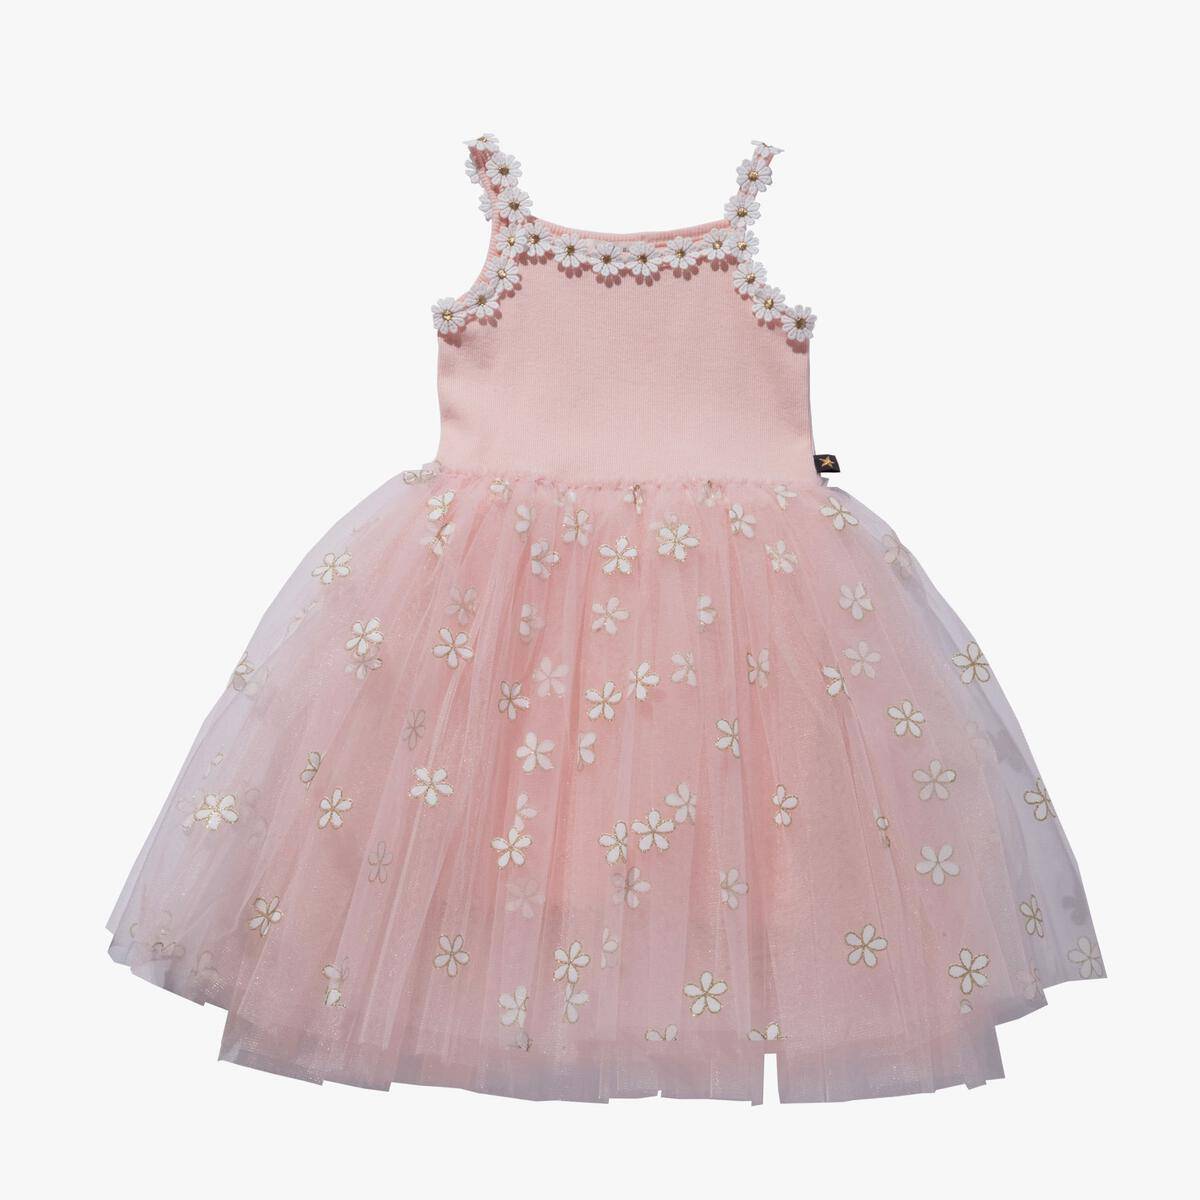 Pink Daisy Tutu Dress - Twinkle Twinkle Little One